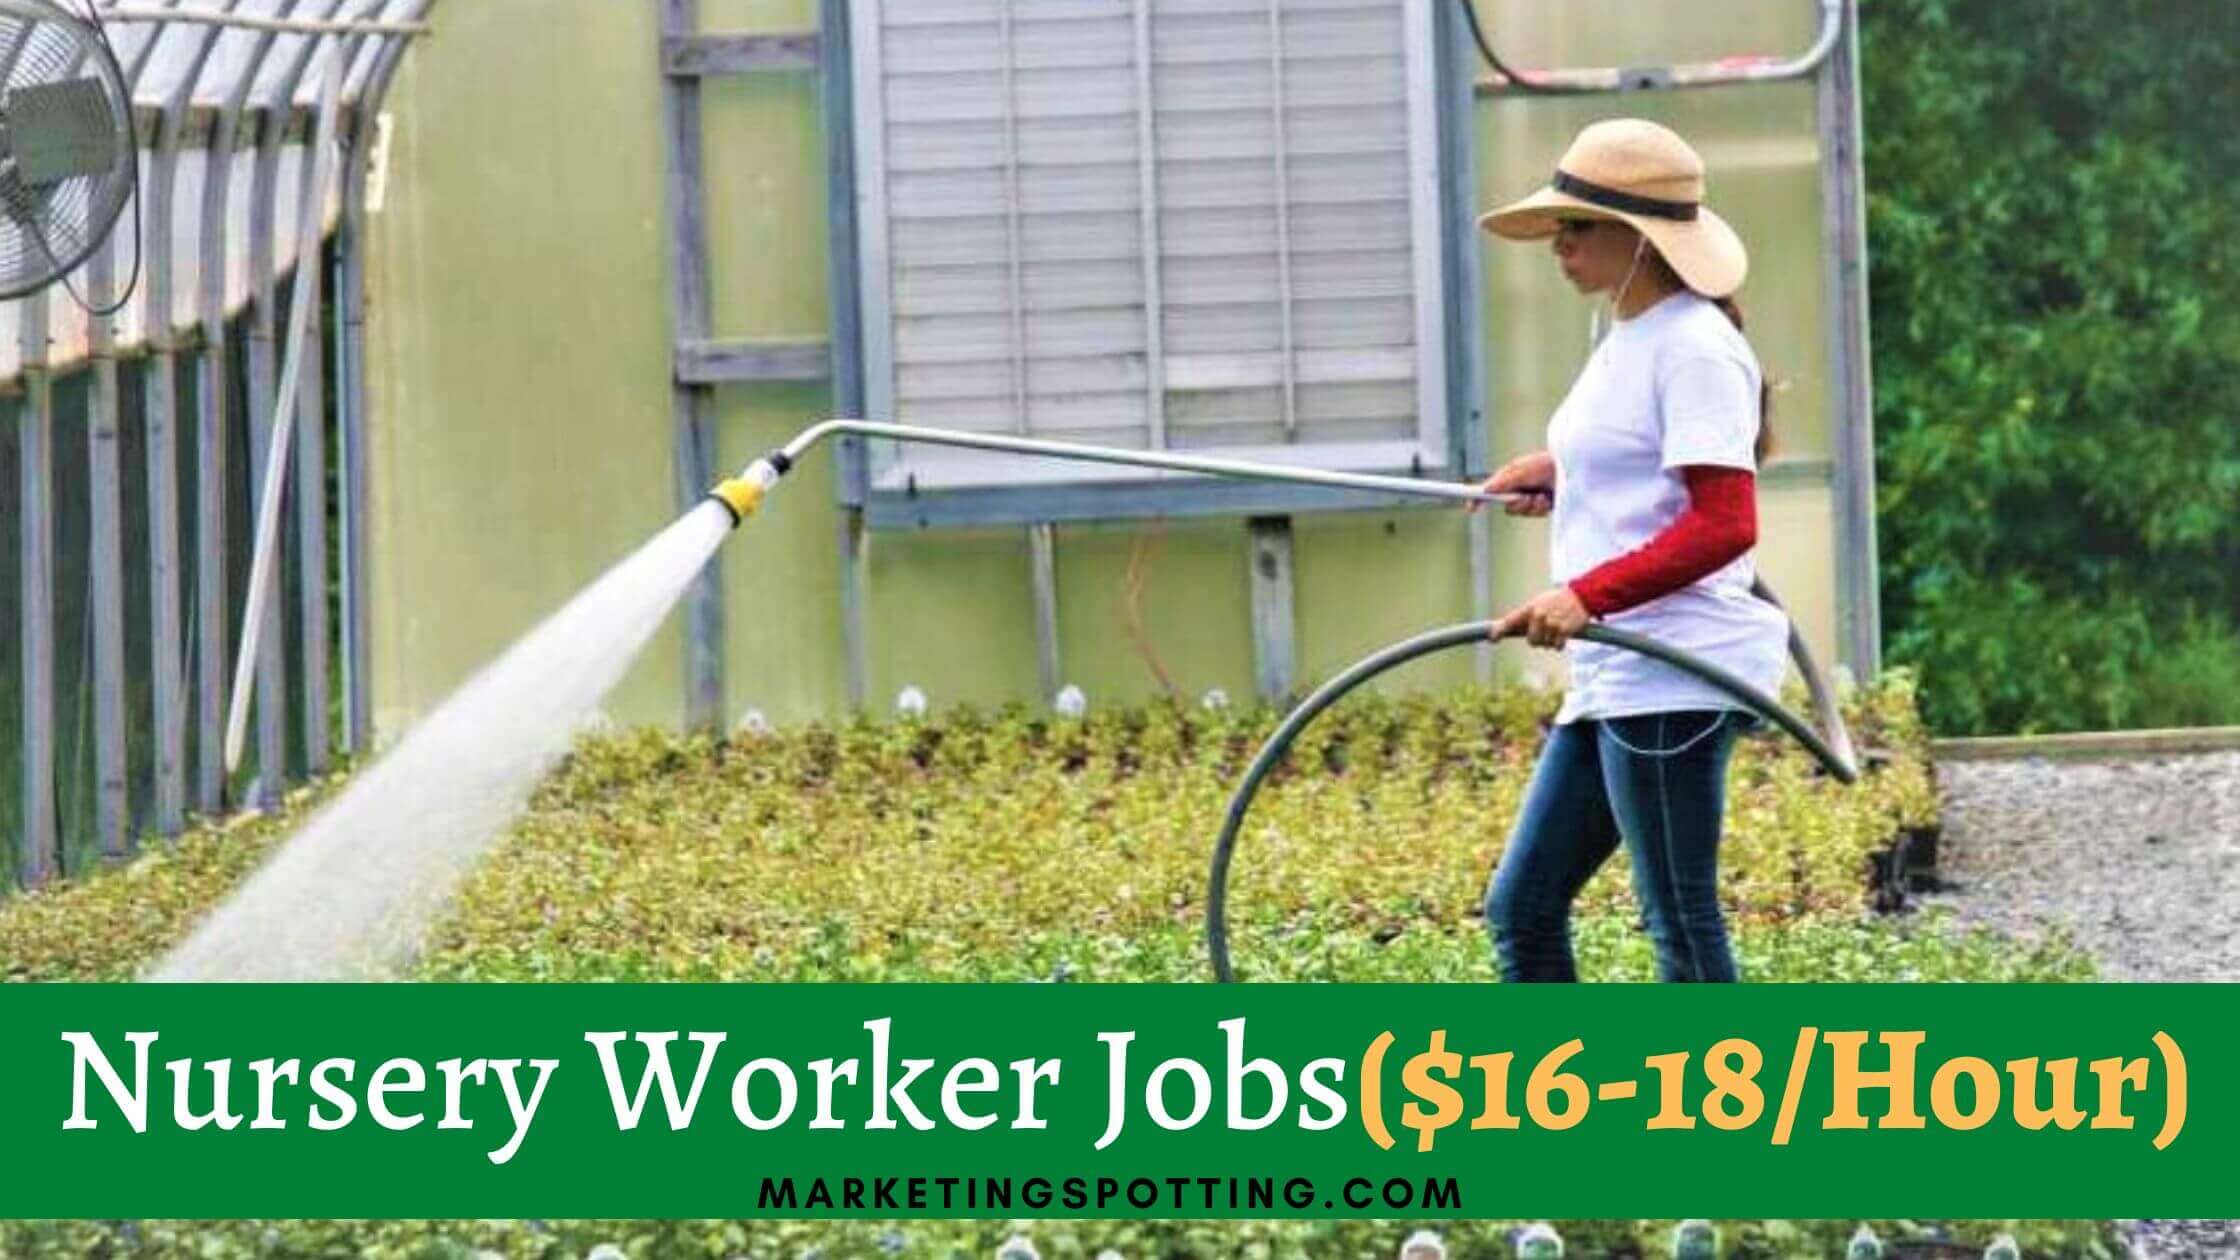 Nursery Worker Jobs in Canada